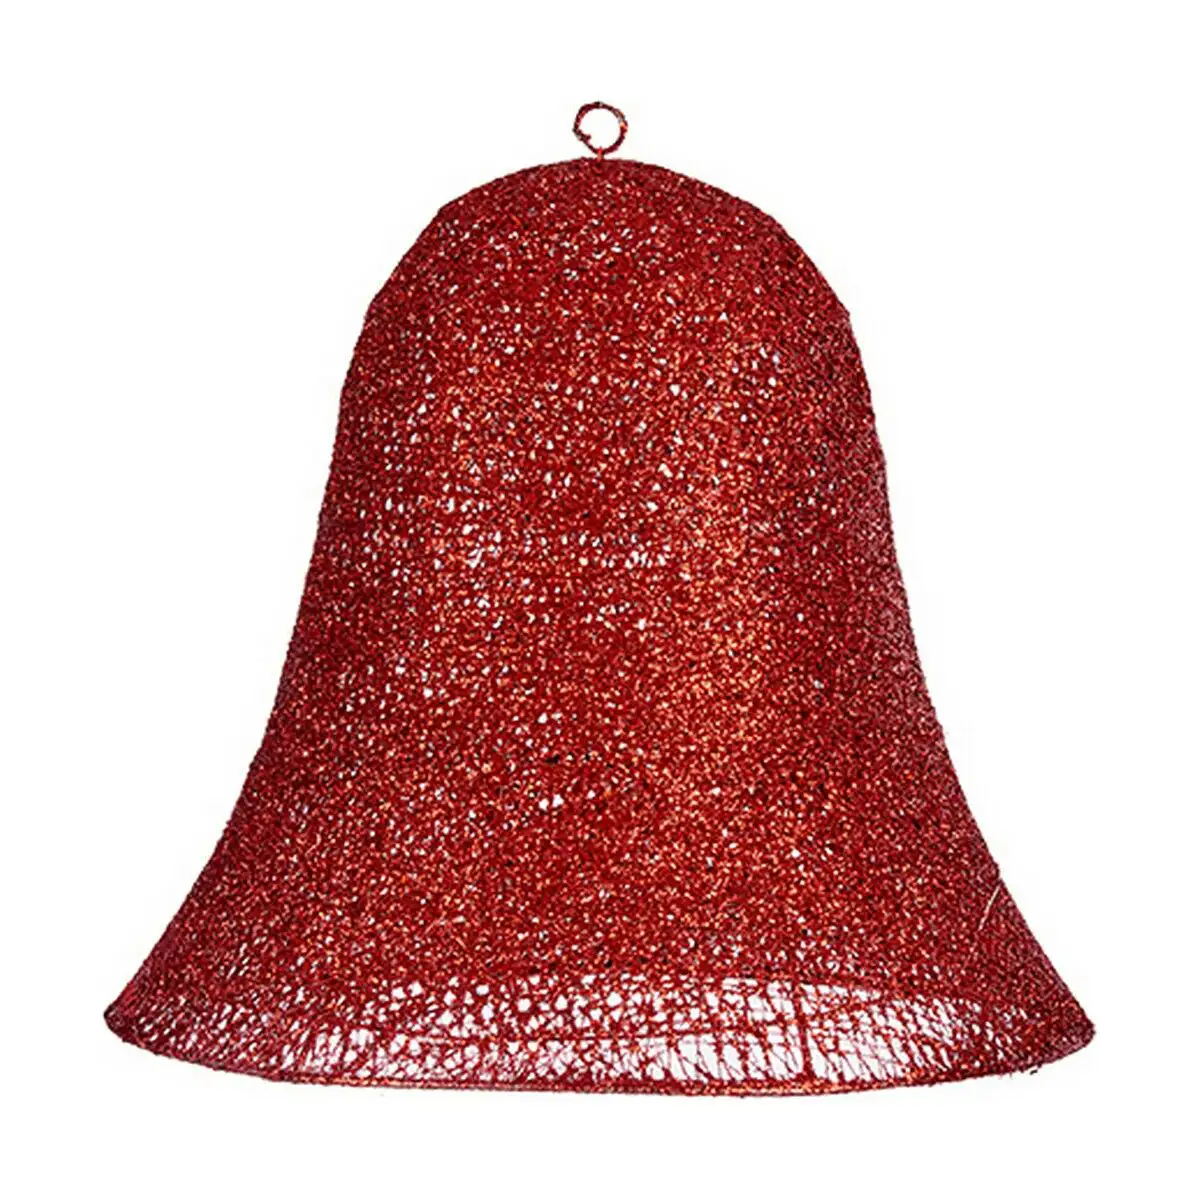 Decorations de noel cloche rouge metal 40 x 37 5 x 40 cm_1085. DIAYTAR SENEGAL - L'Art de Vivre le Shopping Authentique. Découvrez notre boutique en ligne et trouvez des produits qui incarnent la passion et le savoir-faire du Sénégal.